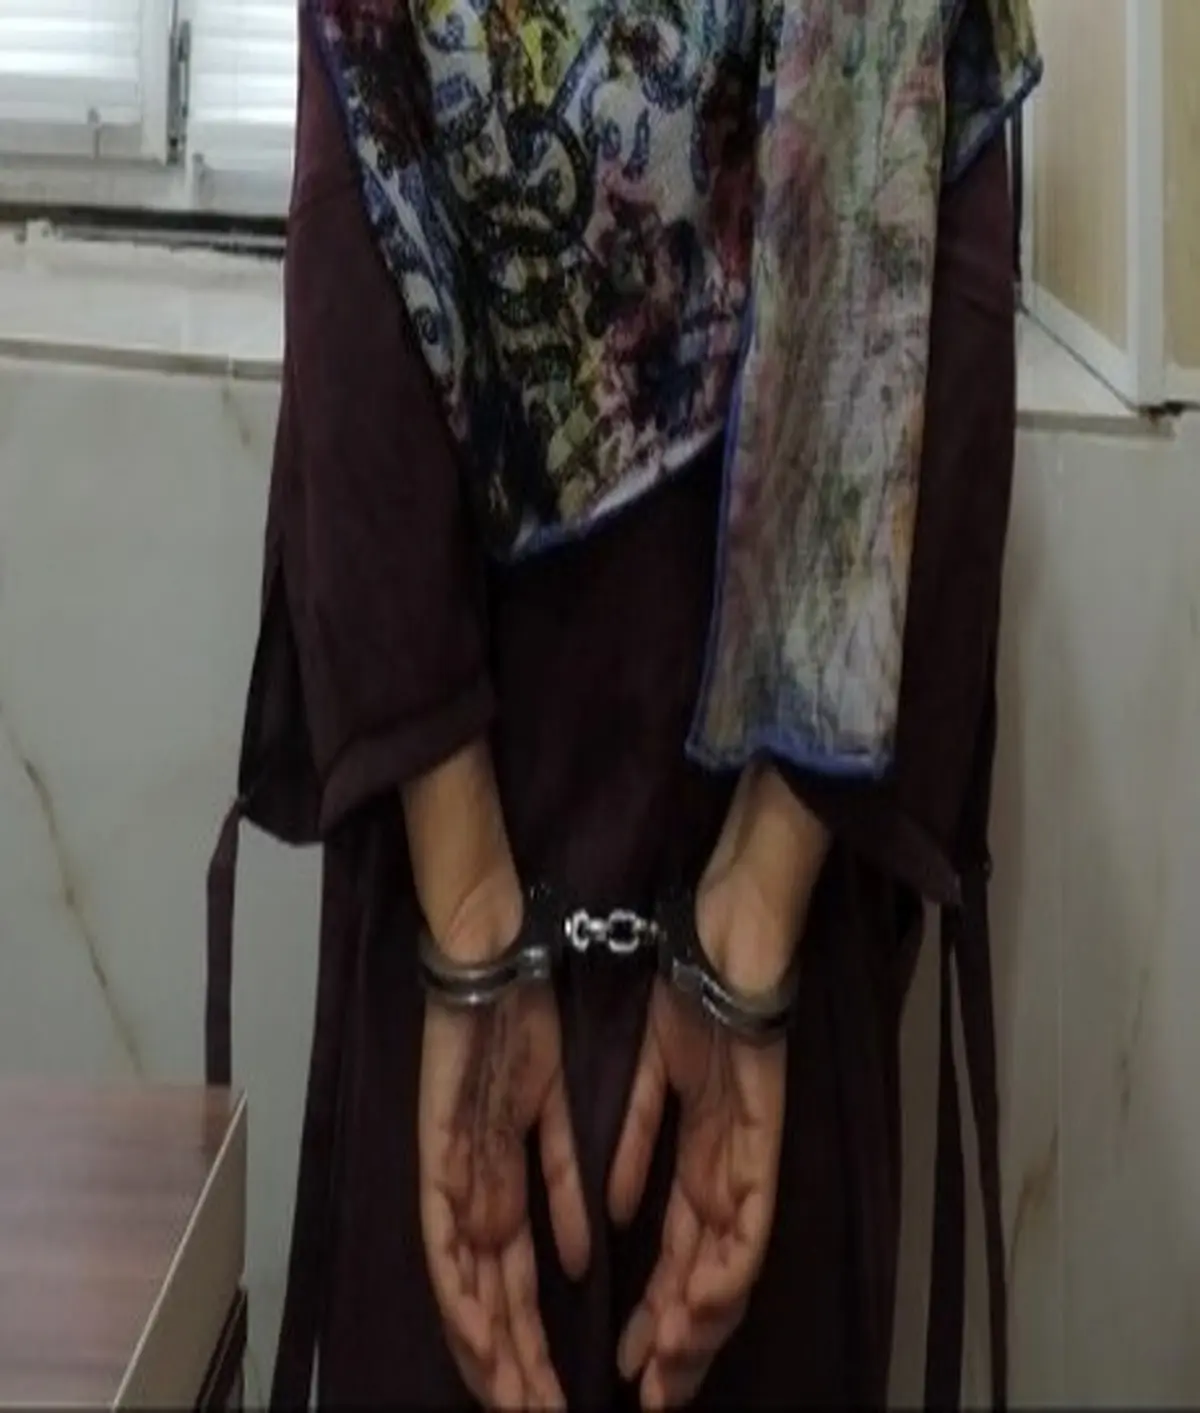 پلیس کرمانشاه  |  مدلینگ هنجارشکن دستگیر شد